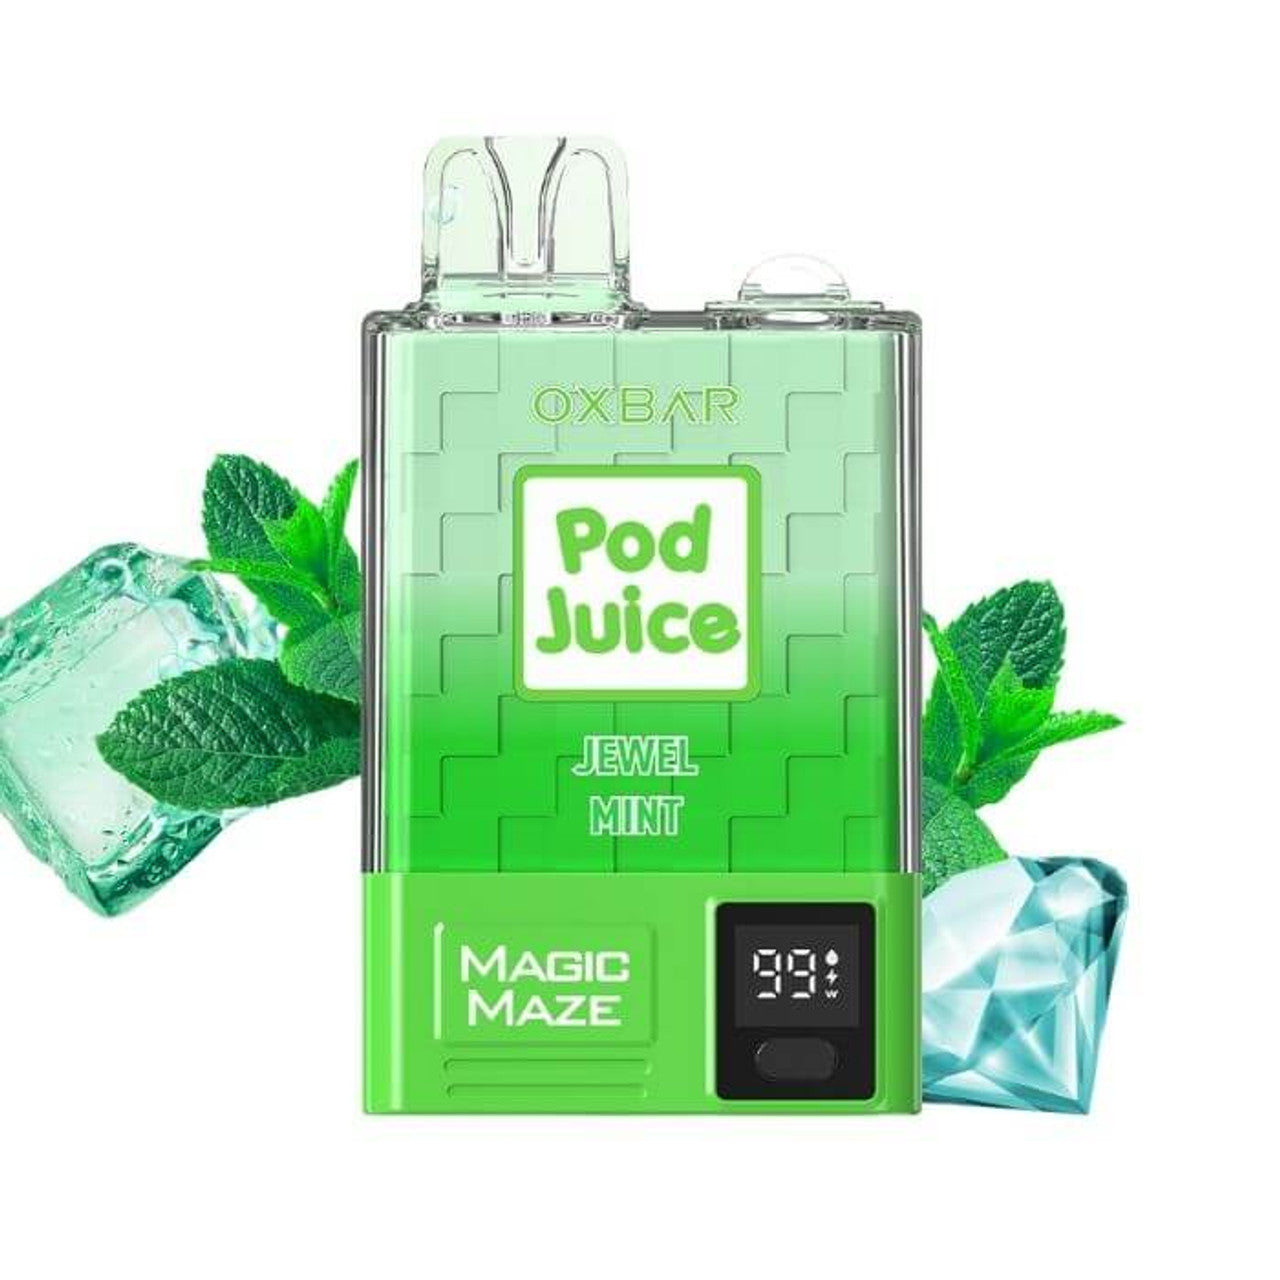 Oxbar Pod Juice 10000 Puffs 5% | Jewel Mint